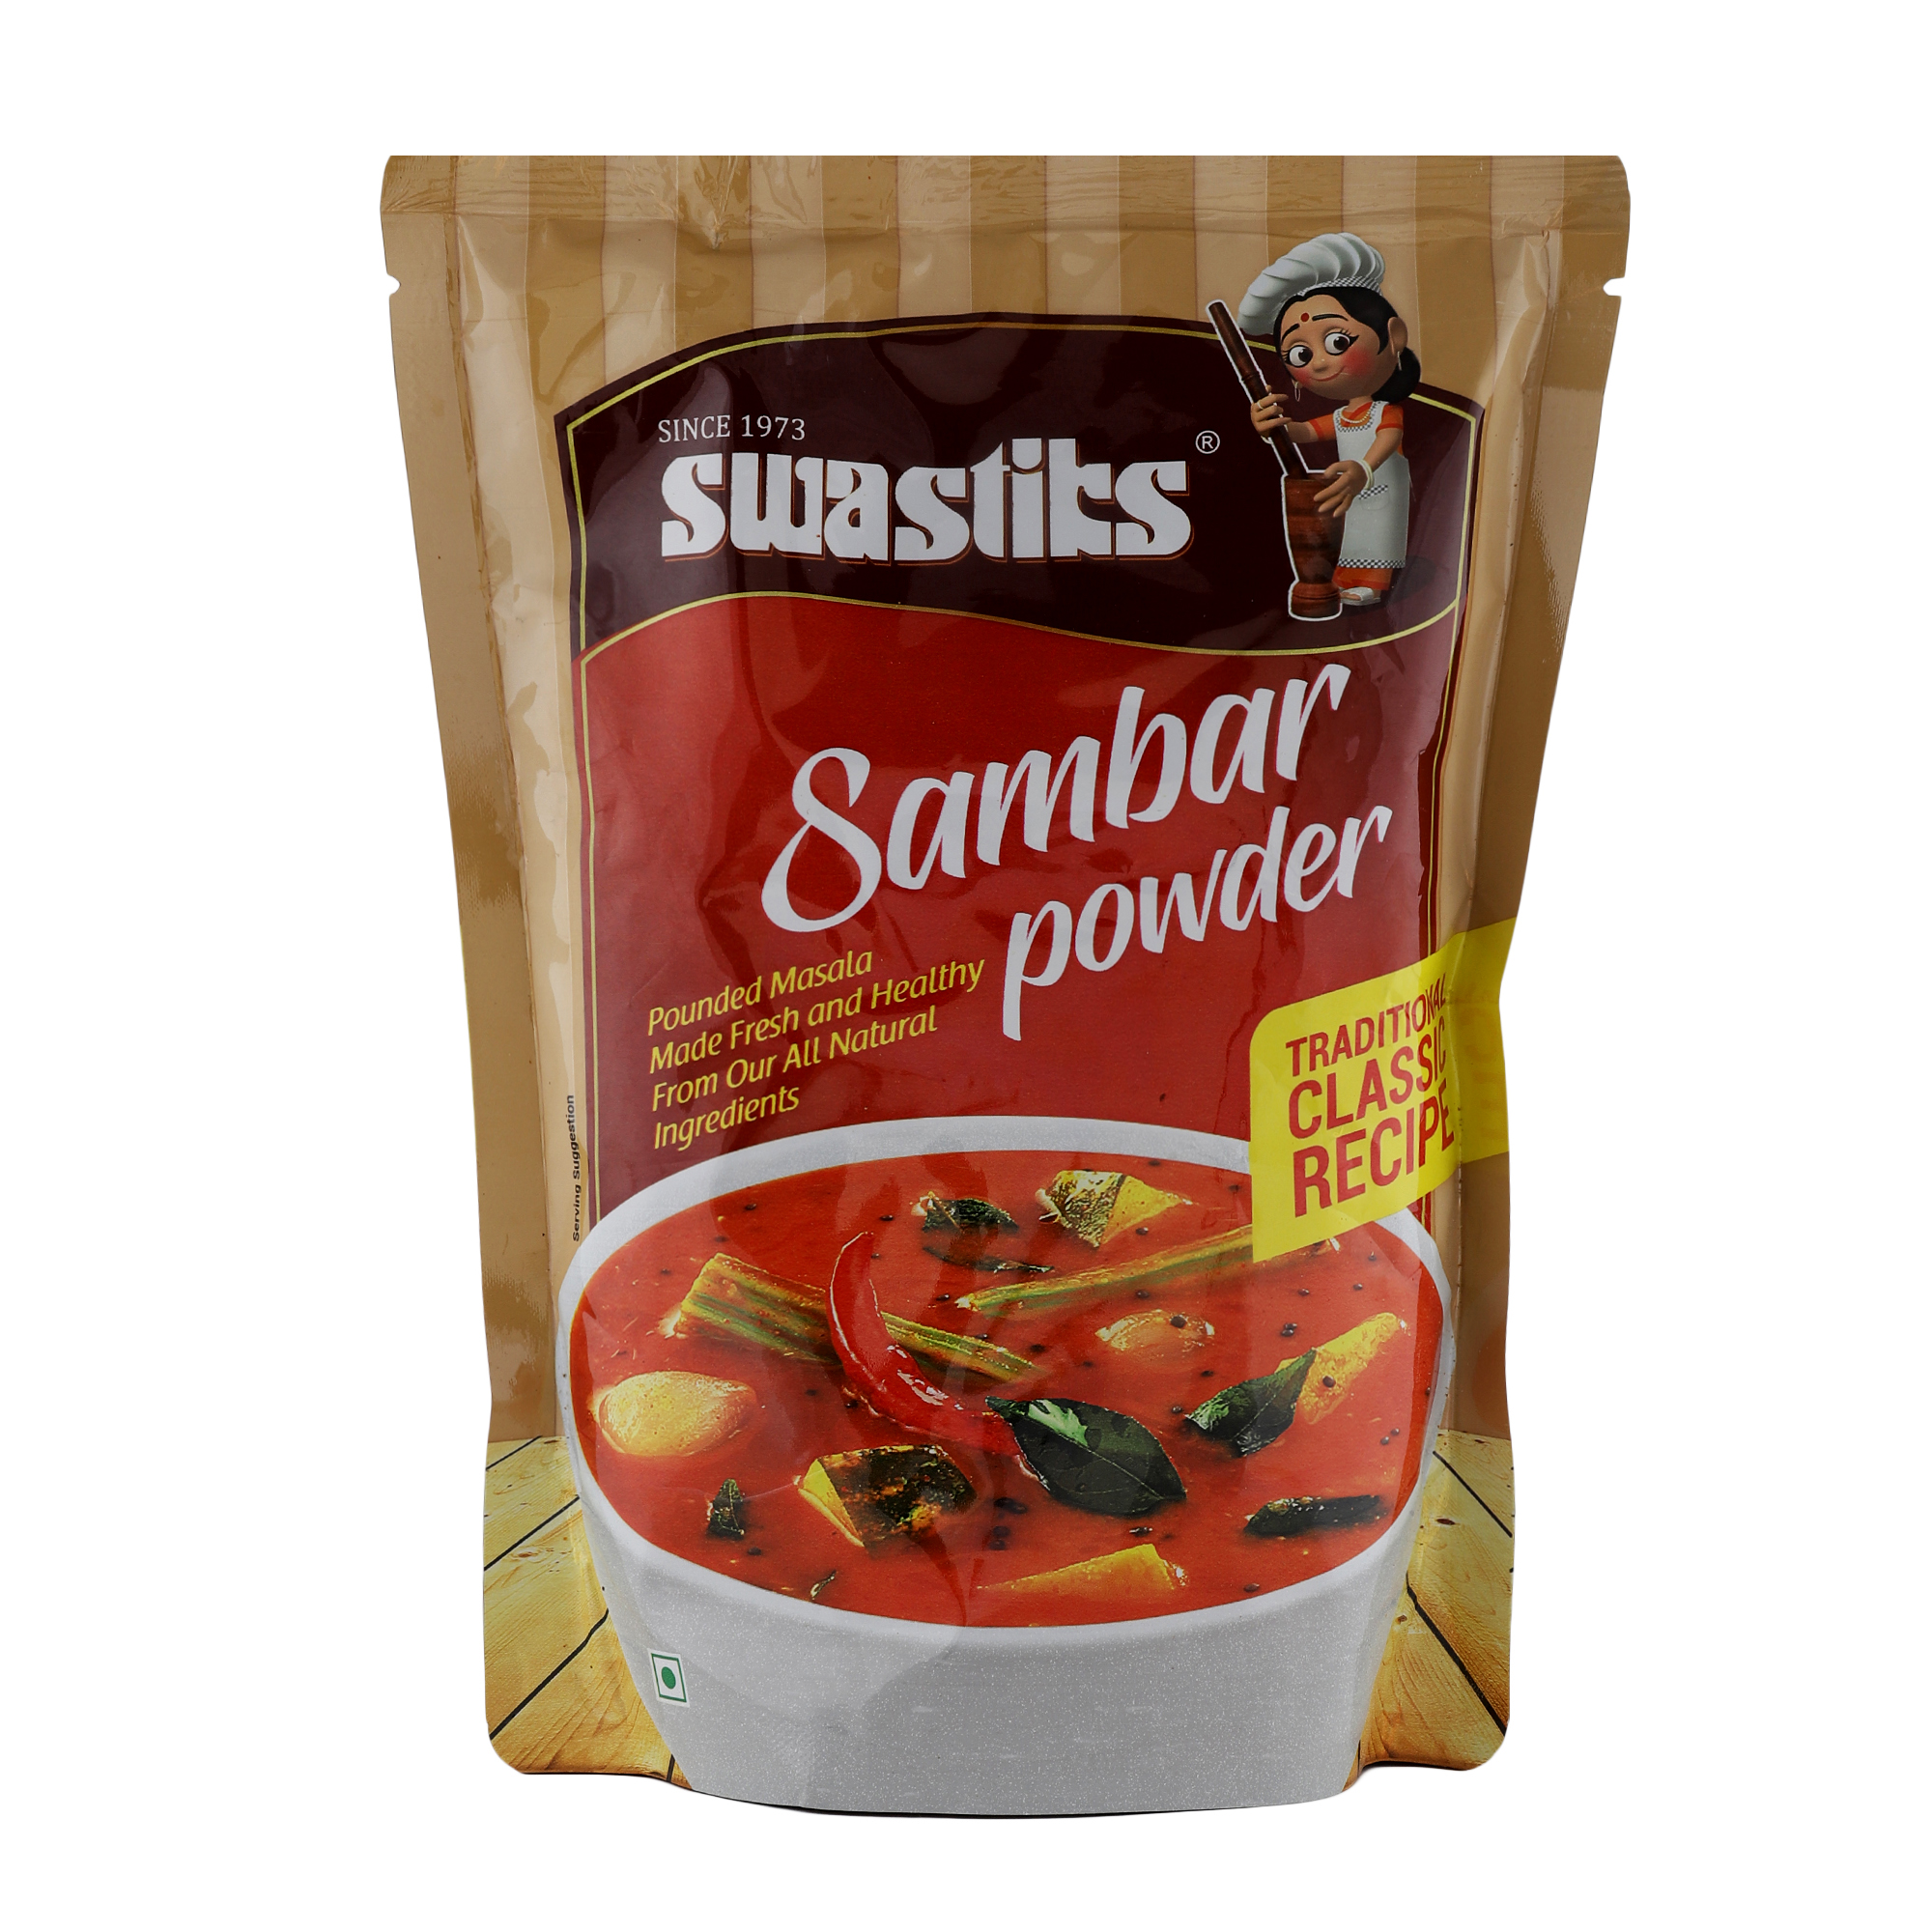 Swastiks sambar powder